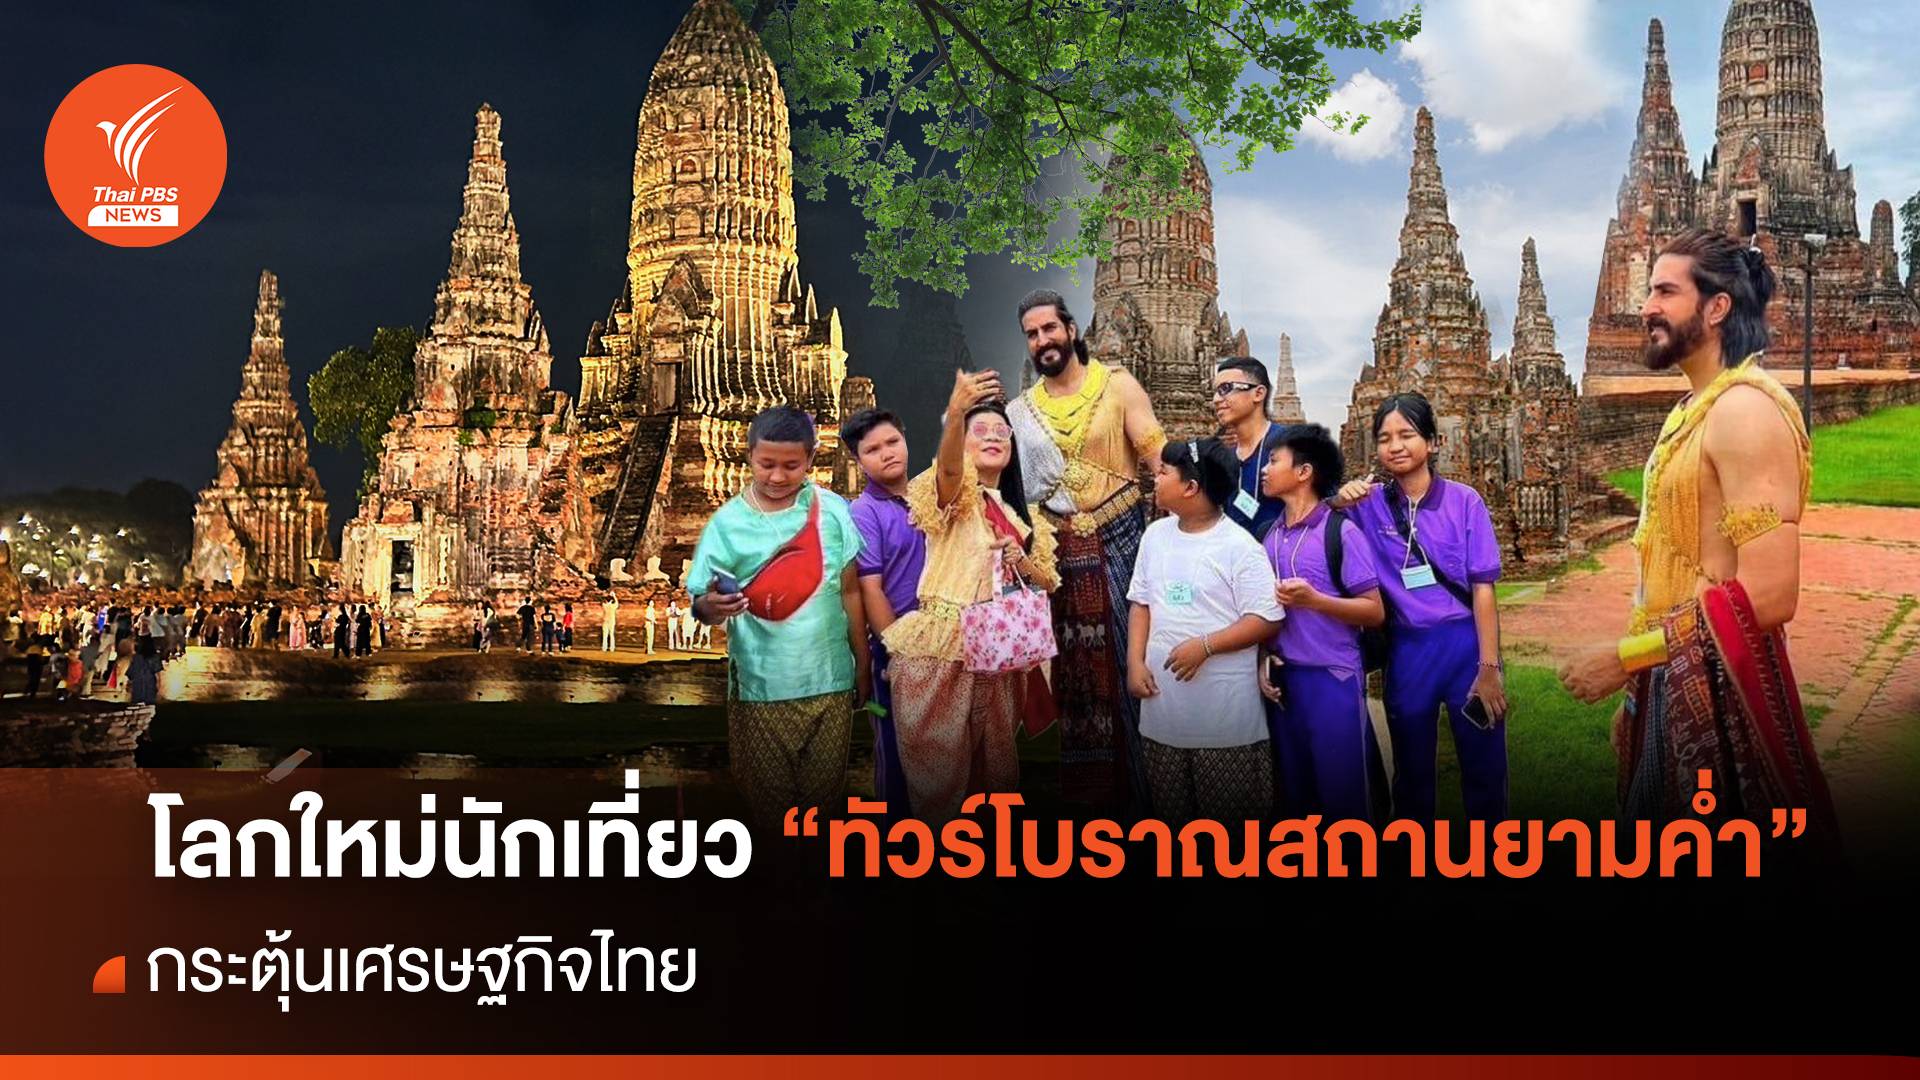 โลกใหม่นักเที่ยว "ทัวร์โบราณสถานยามค่ำ" กระตุ้นเศรษฐกิจไทย